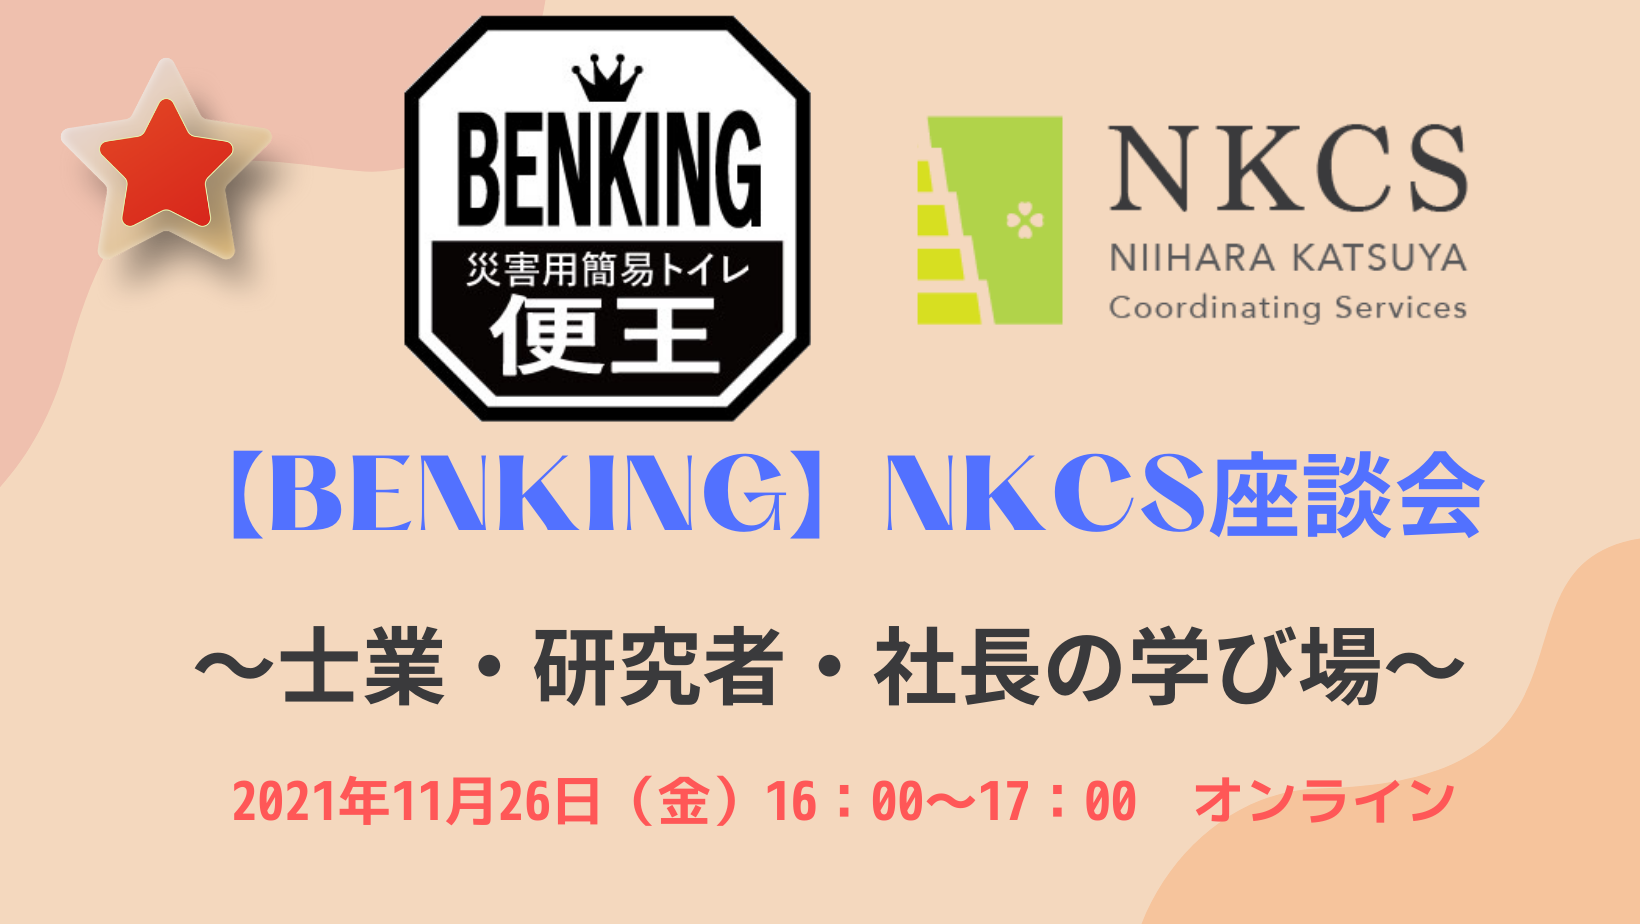 2021年11月26日金曜日 16:00〜 【BENKING】NKCS座談会～士業・研究者・社長の学び場～を開催します